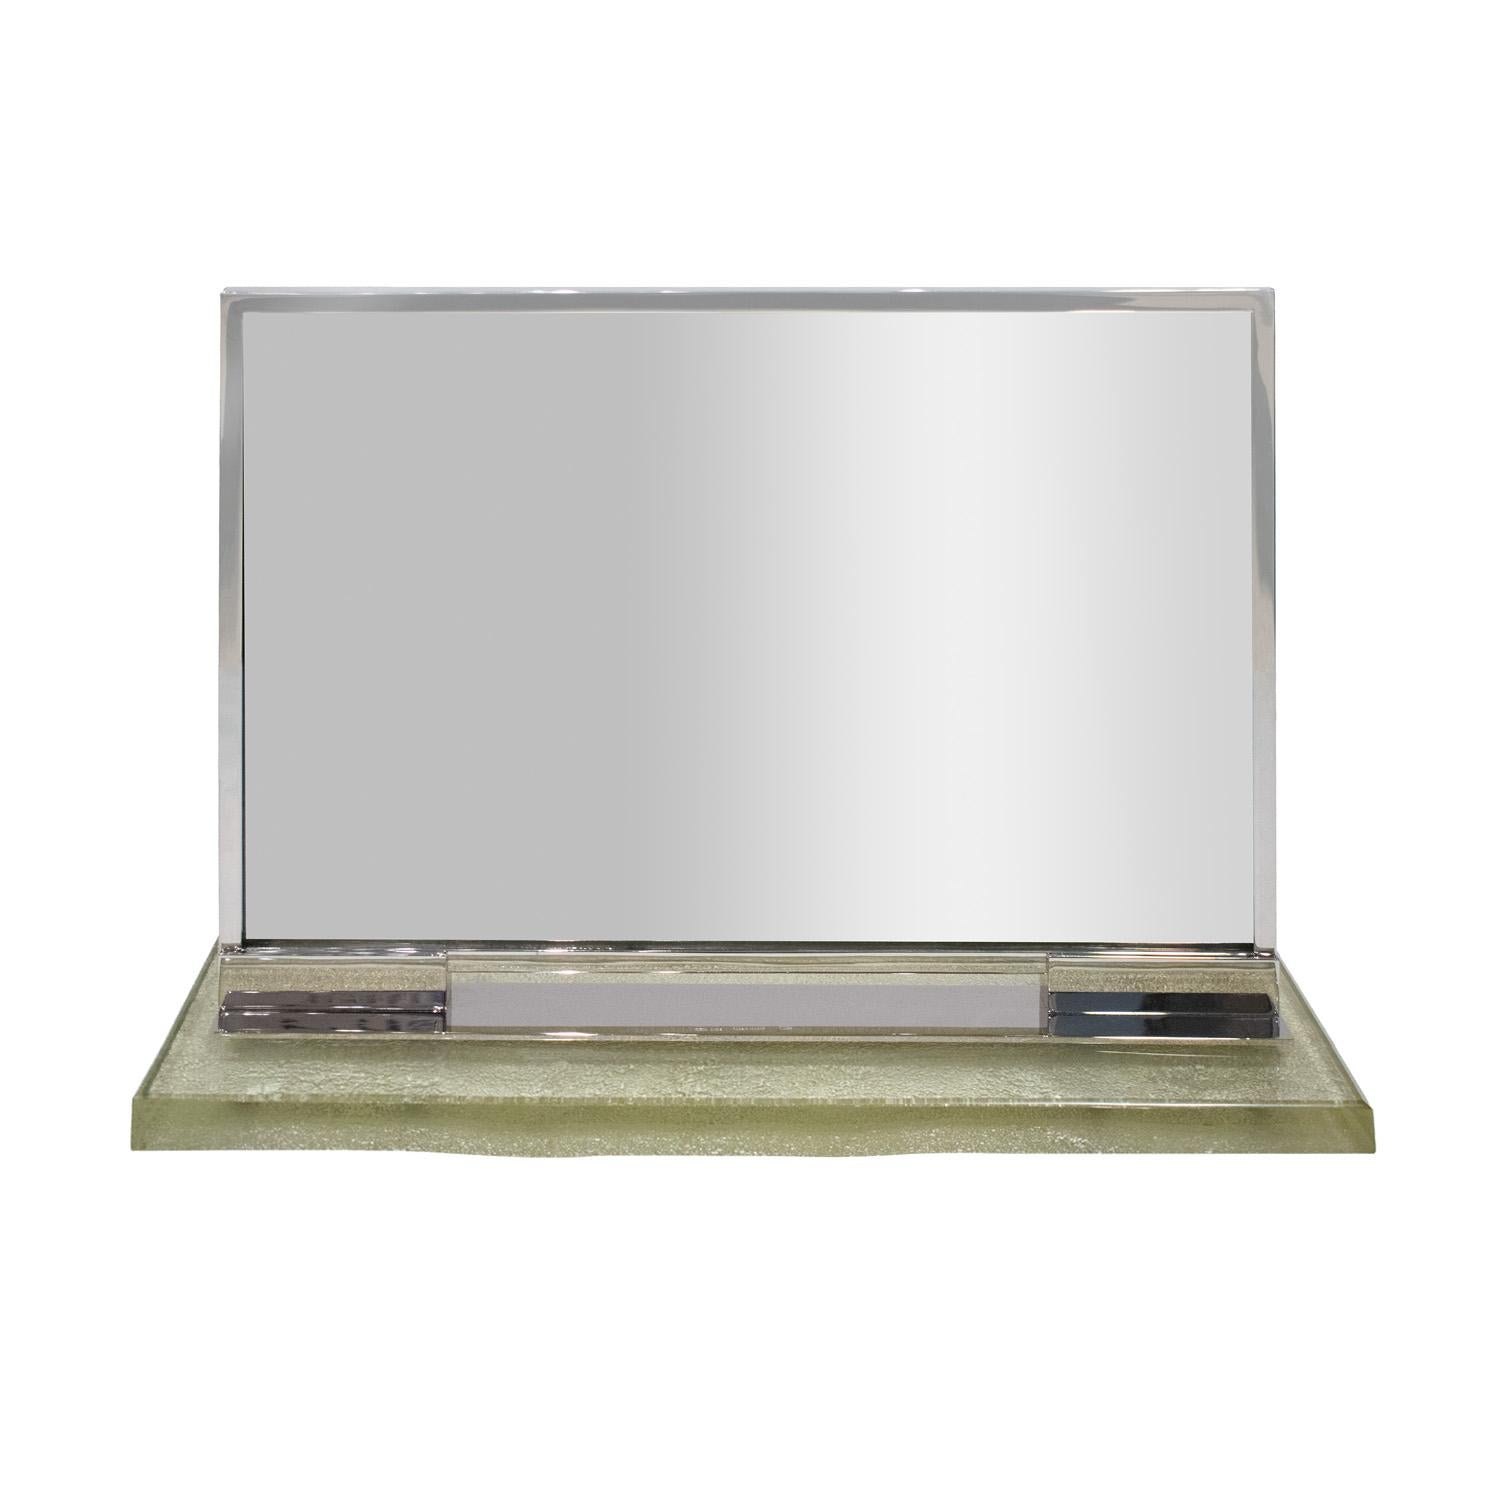 Seltener und bedeutender Kosmetikspiegel aus Silberblech mit dickem Glassockel von Maison Desny Paris (1927-1933) ca. 1930 (Signiert 